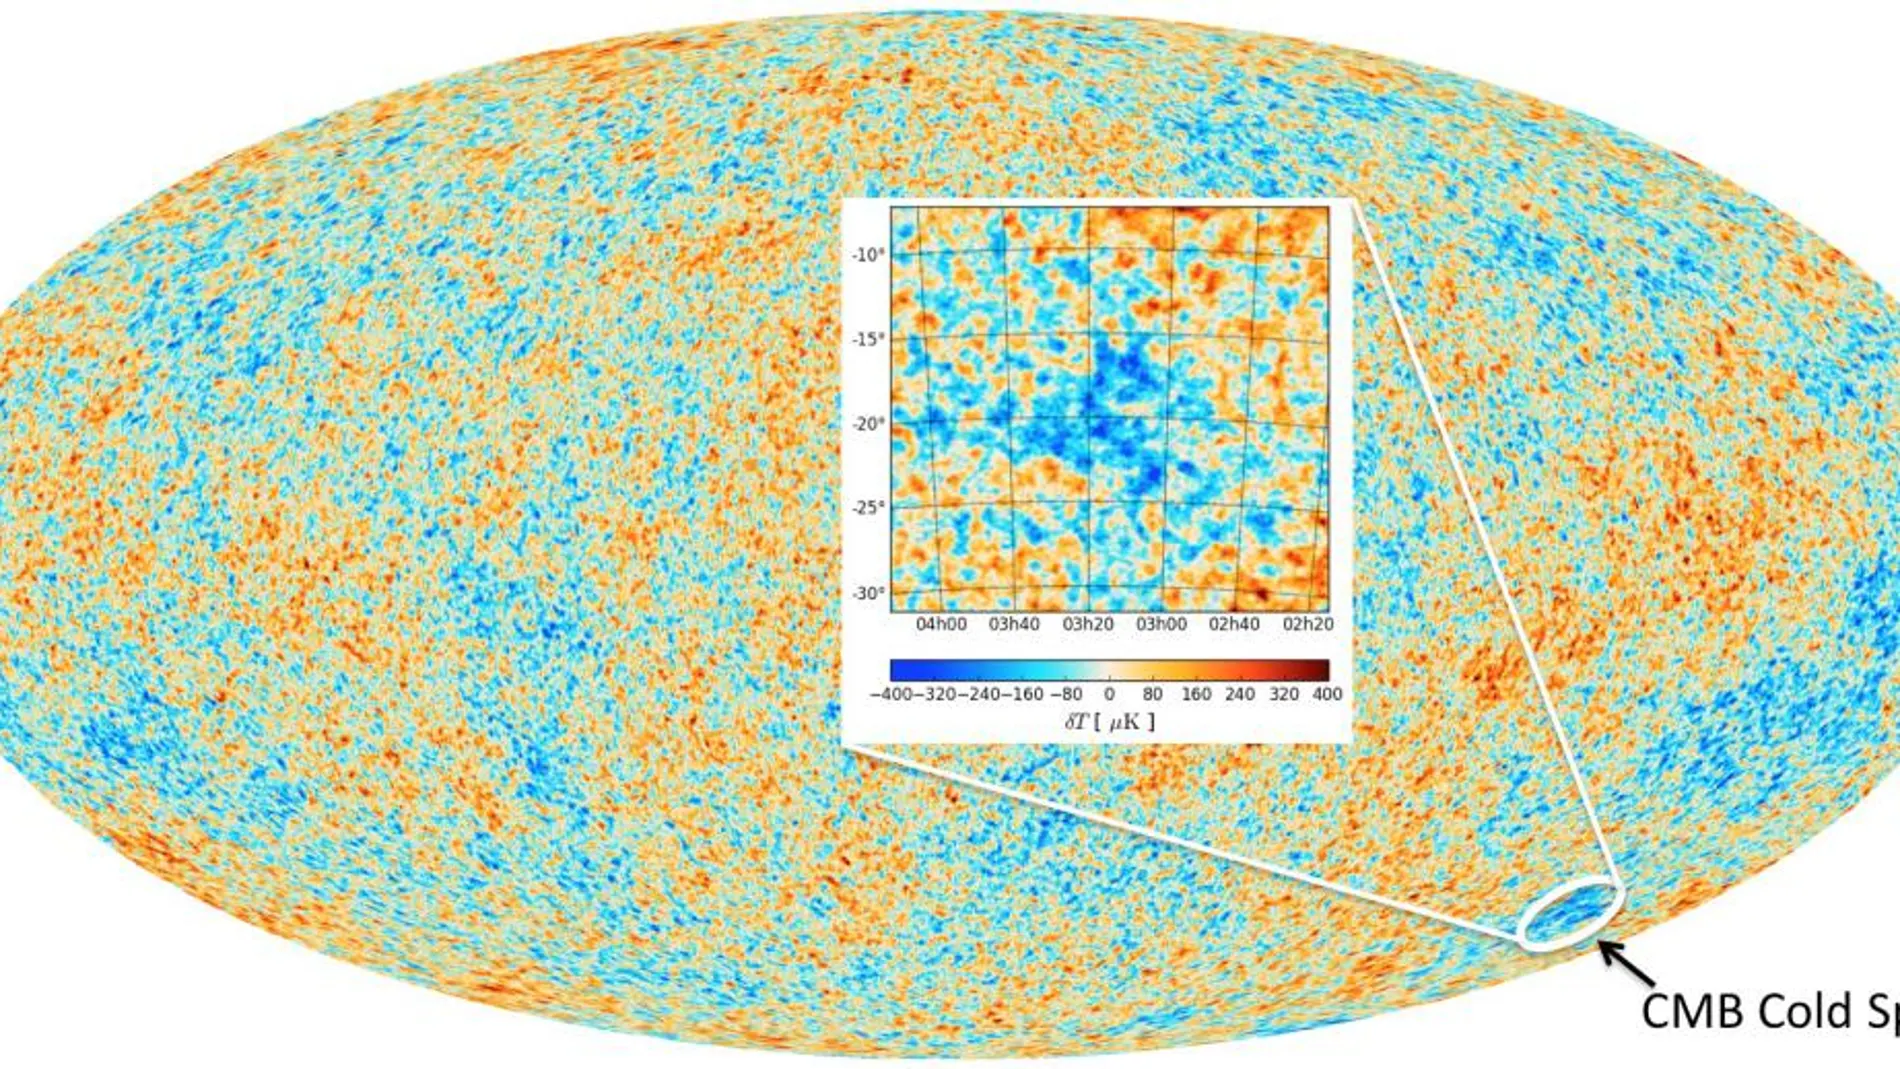 El mapa del universo y del fondo de microondas (CMB) obtenido por el satélite Planck. El rojo representa regiones ligeramente más cálidas y el azul, las regiones ligeramente más frías. El punto frío (CMB Cold Spot) se muestra en la inserción y la diferencia de temperatura en la cuadro interior